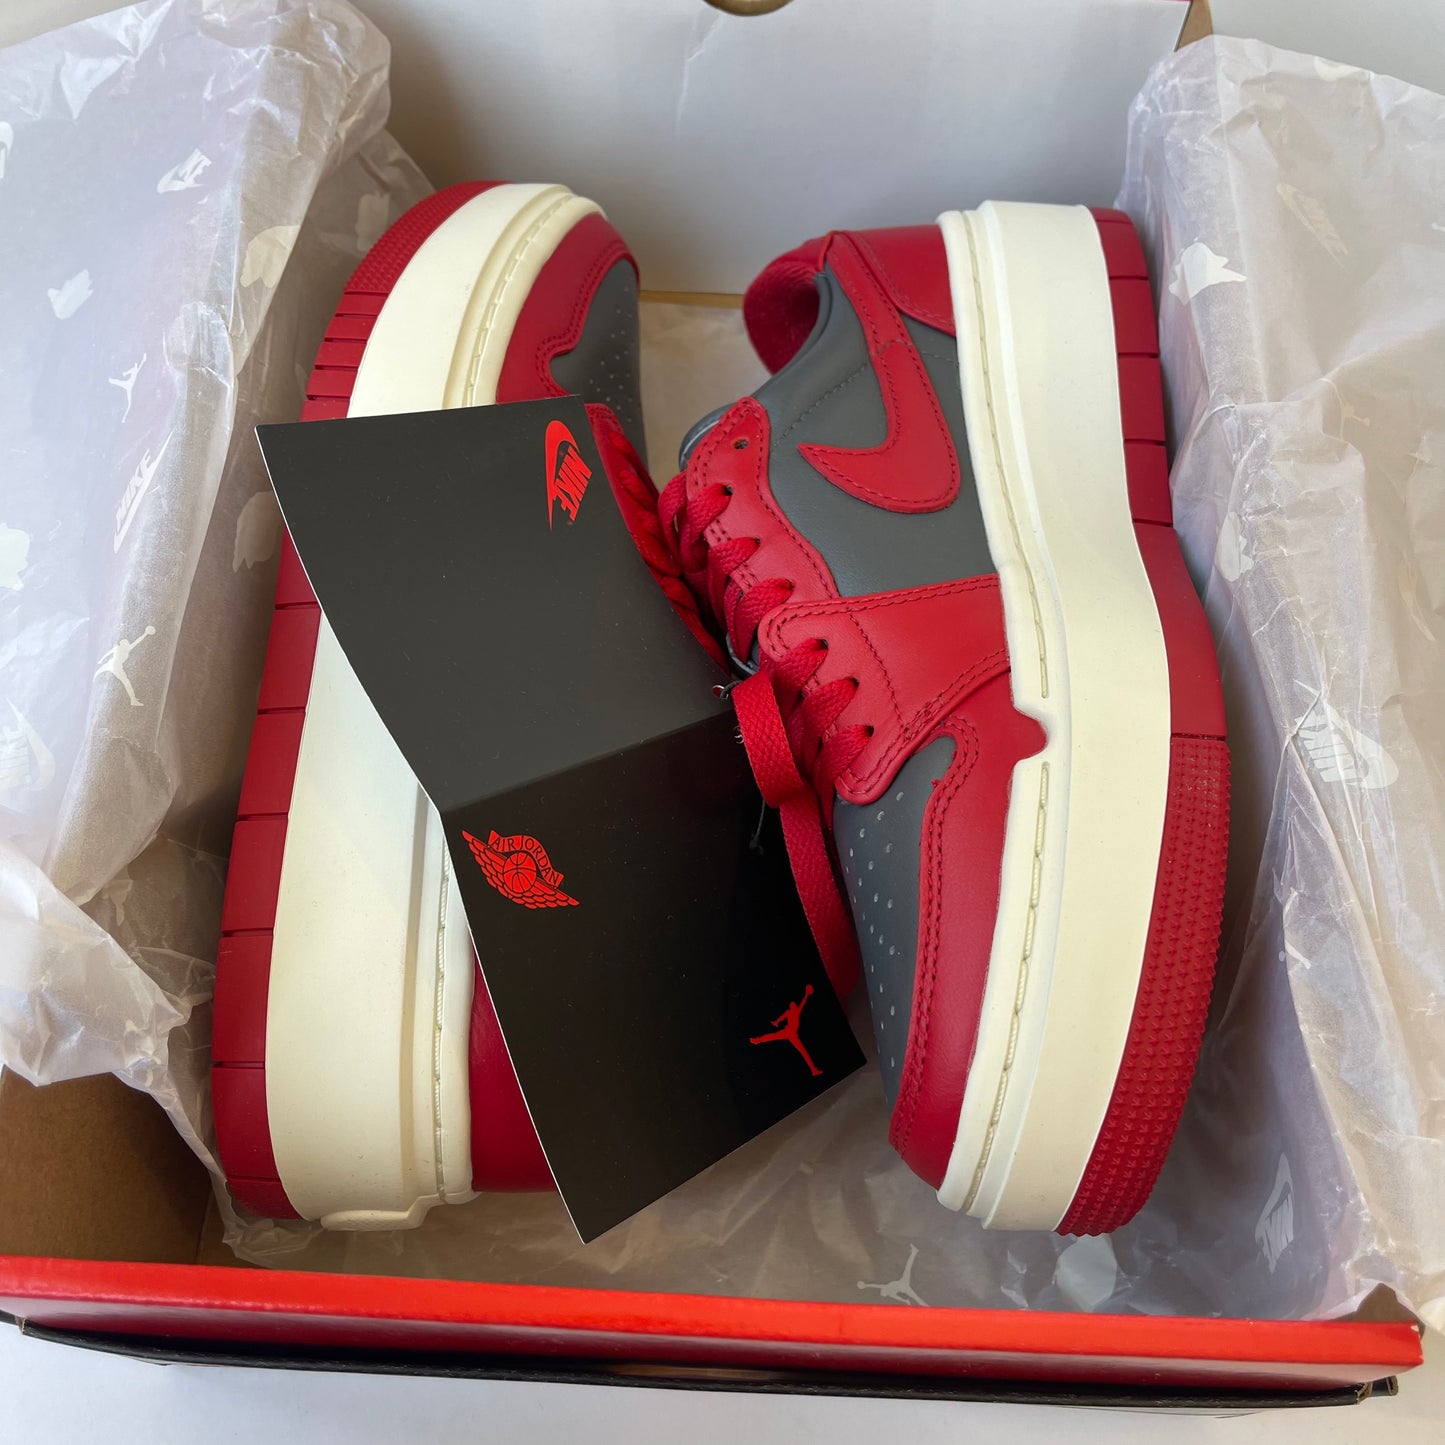 Nike Air Jordan Elevate Platform Women’s Sneakers - Varsity Red / Dark Grey